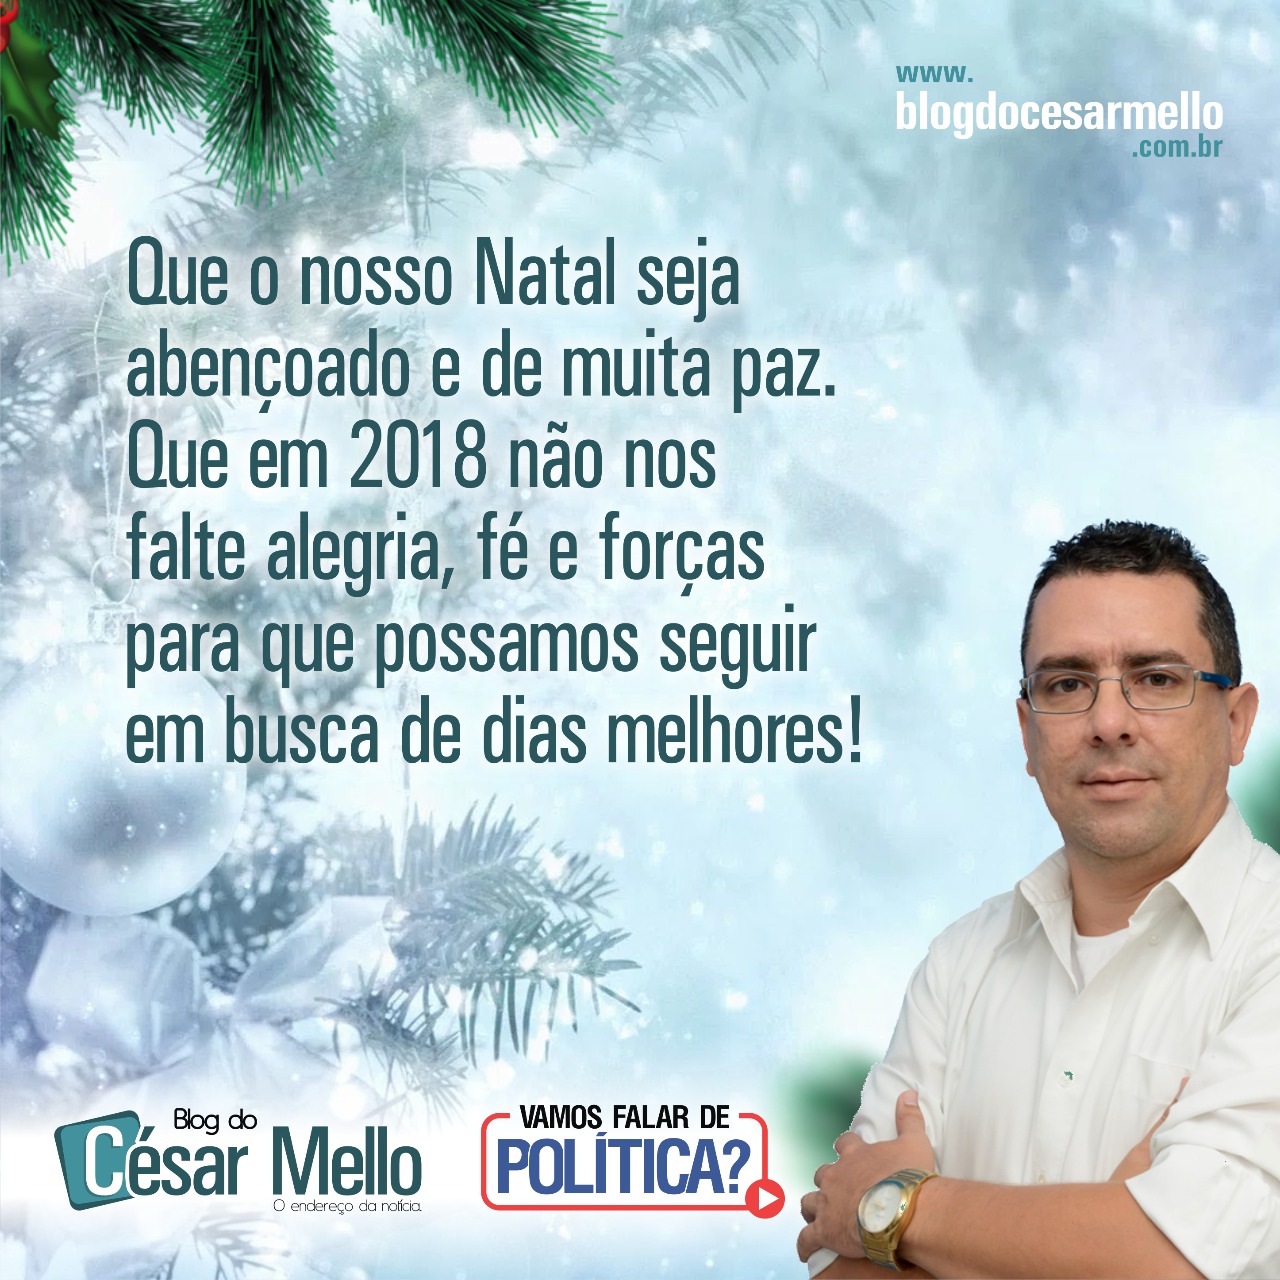 Blog do César Mello: Feliz Natal!